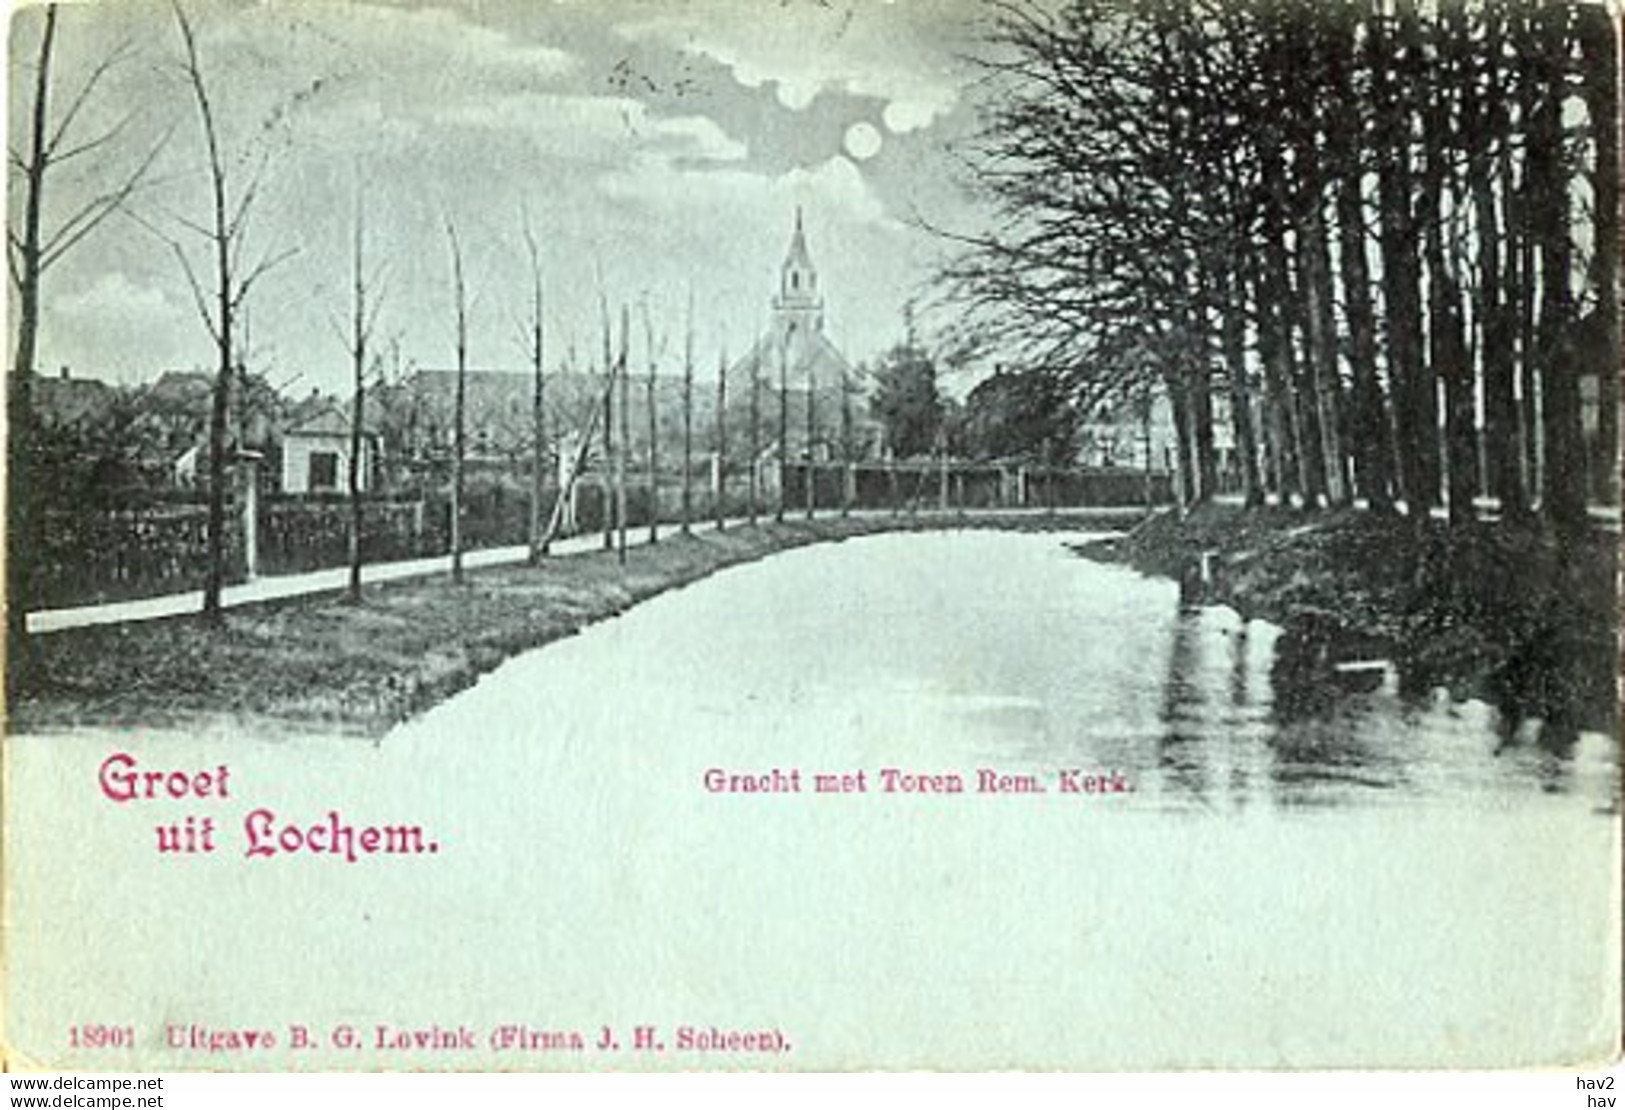 Lochem Met Toren Rem.kerk AM3125 - Lochem